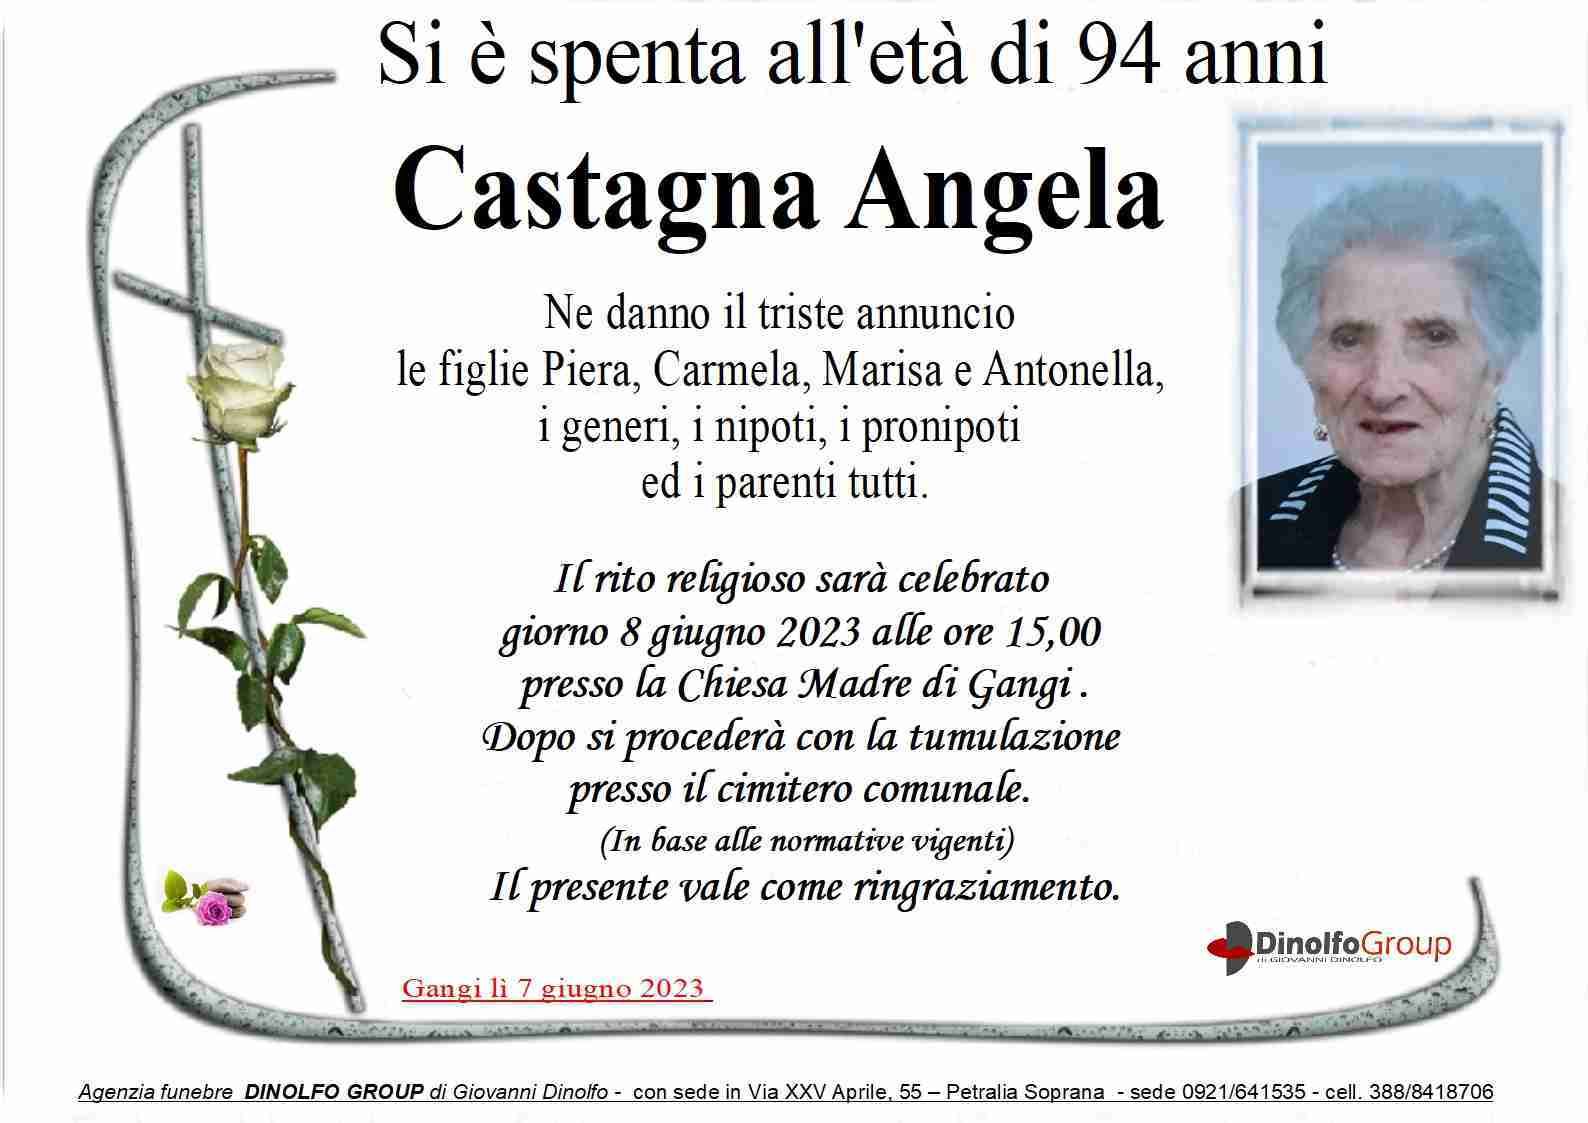 Angela Castagna